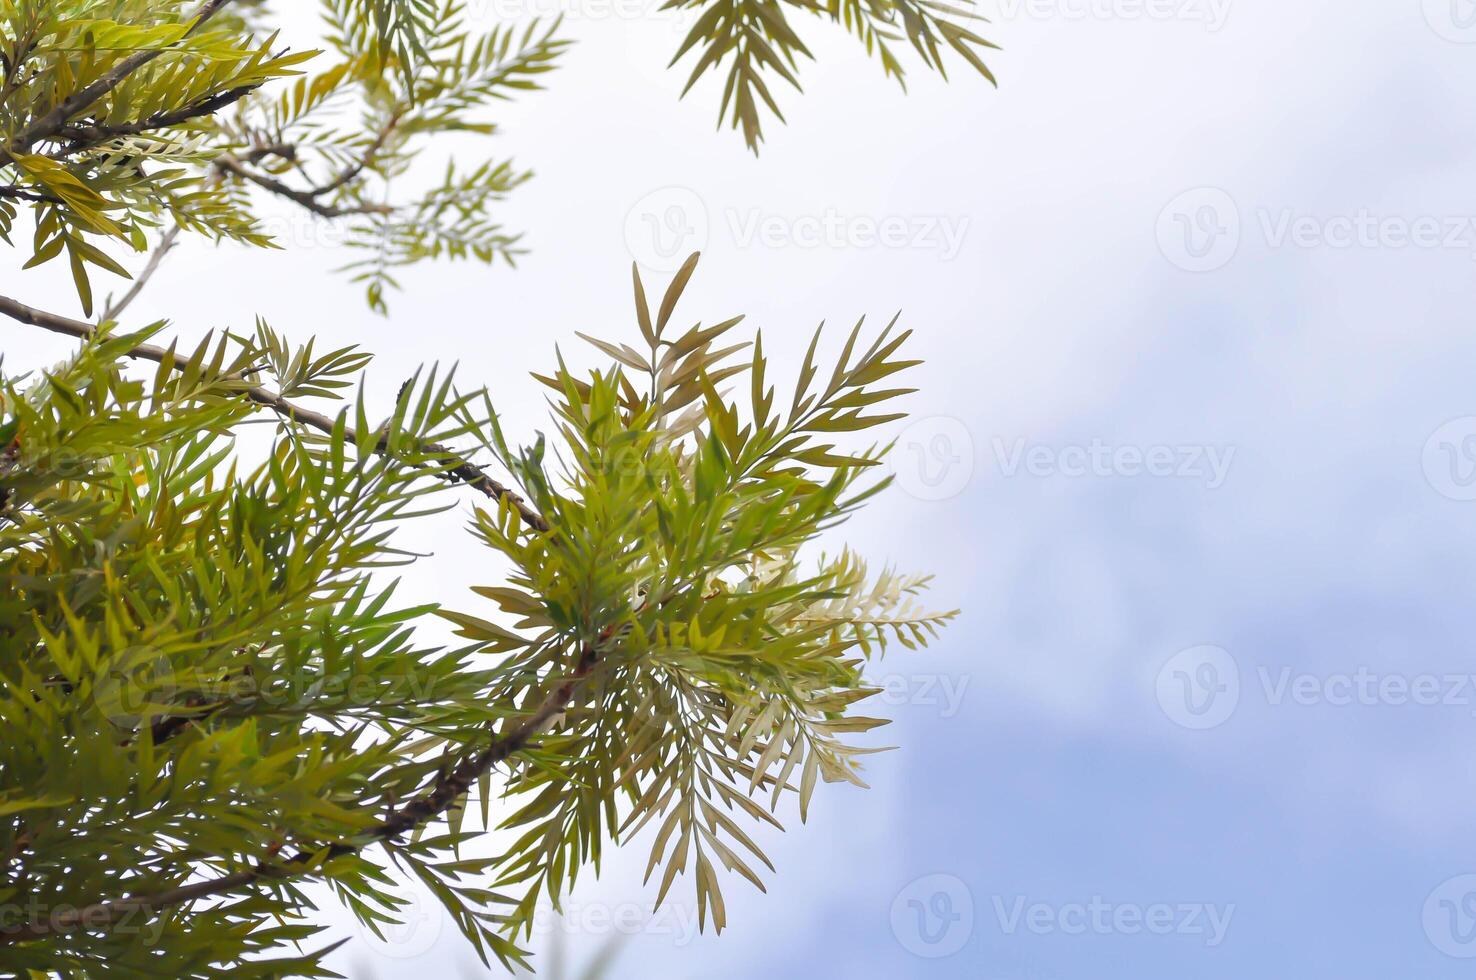 Grevillea robusta, Silky oak or Australian silver oak or Silk Oak or Silky Oak and sky photo